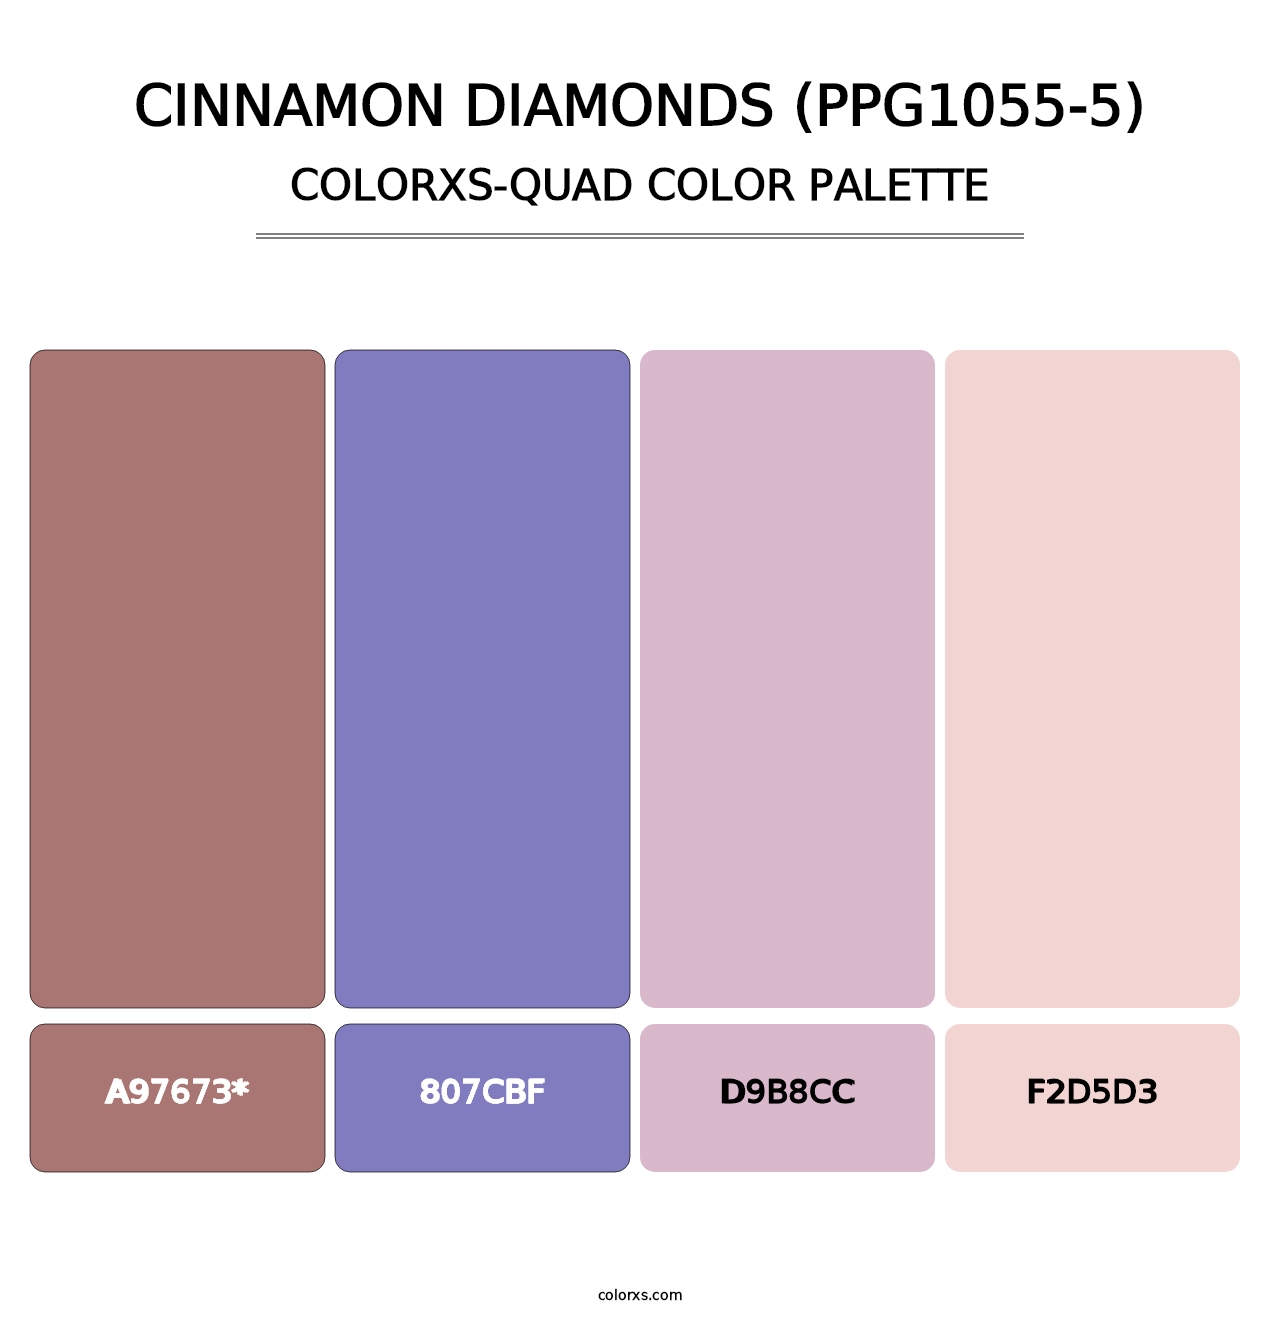 Cinnamon Diamonds (PPG1055-5) - Colorxs Quad Palette